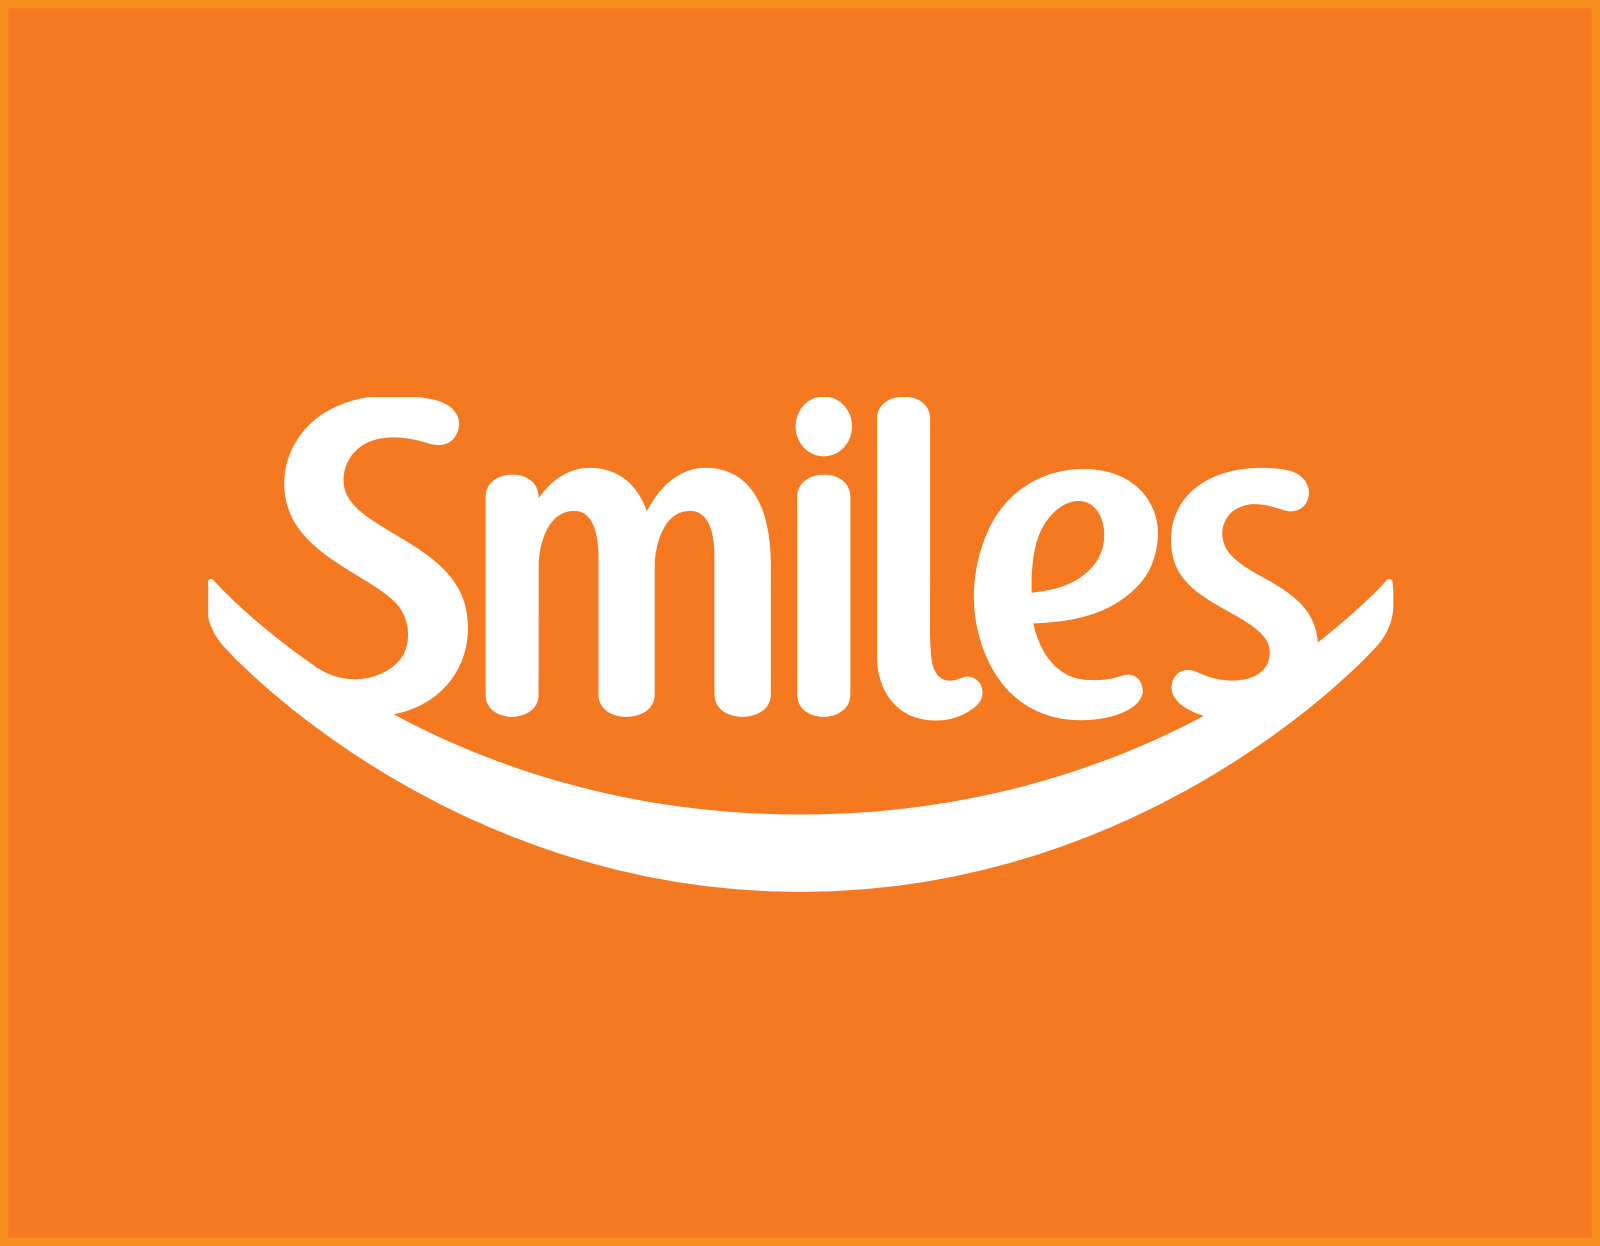 Smiles logo.